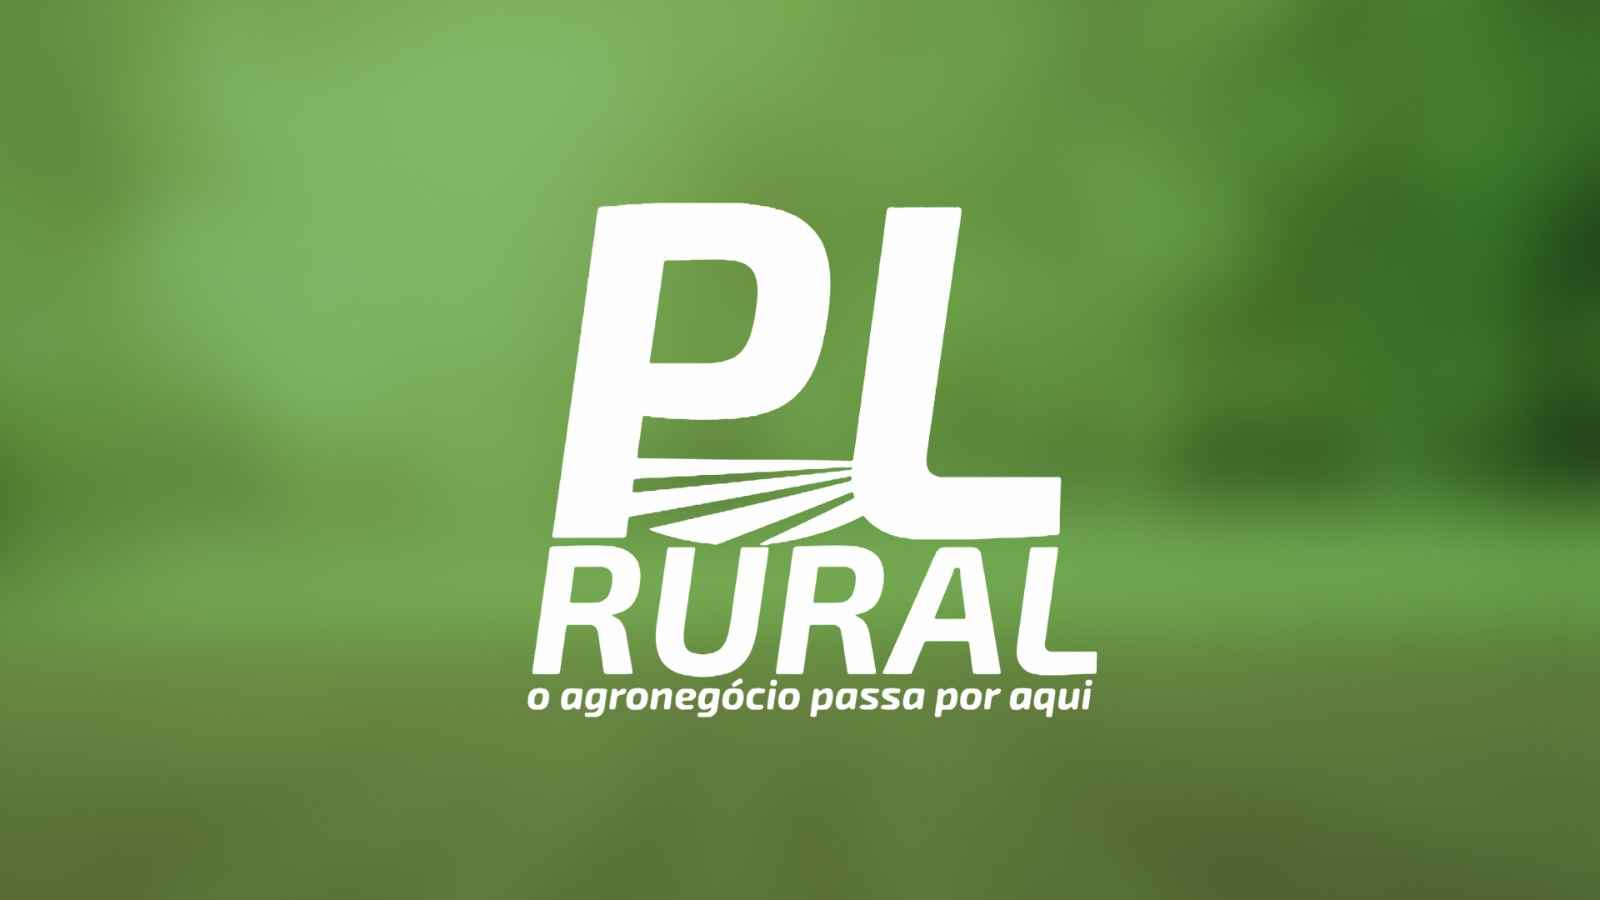 PL Rural